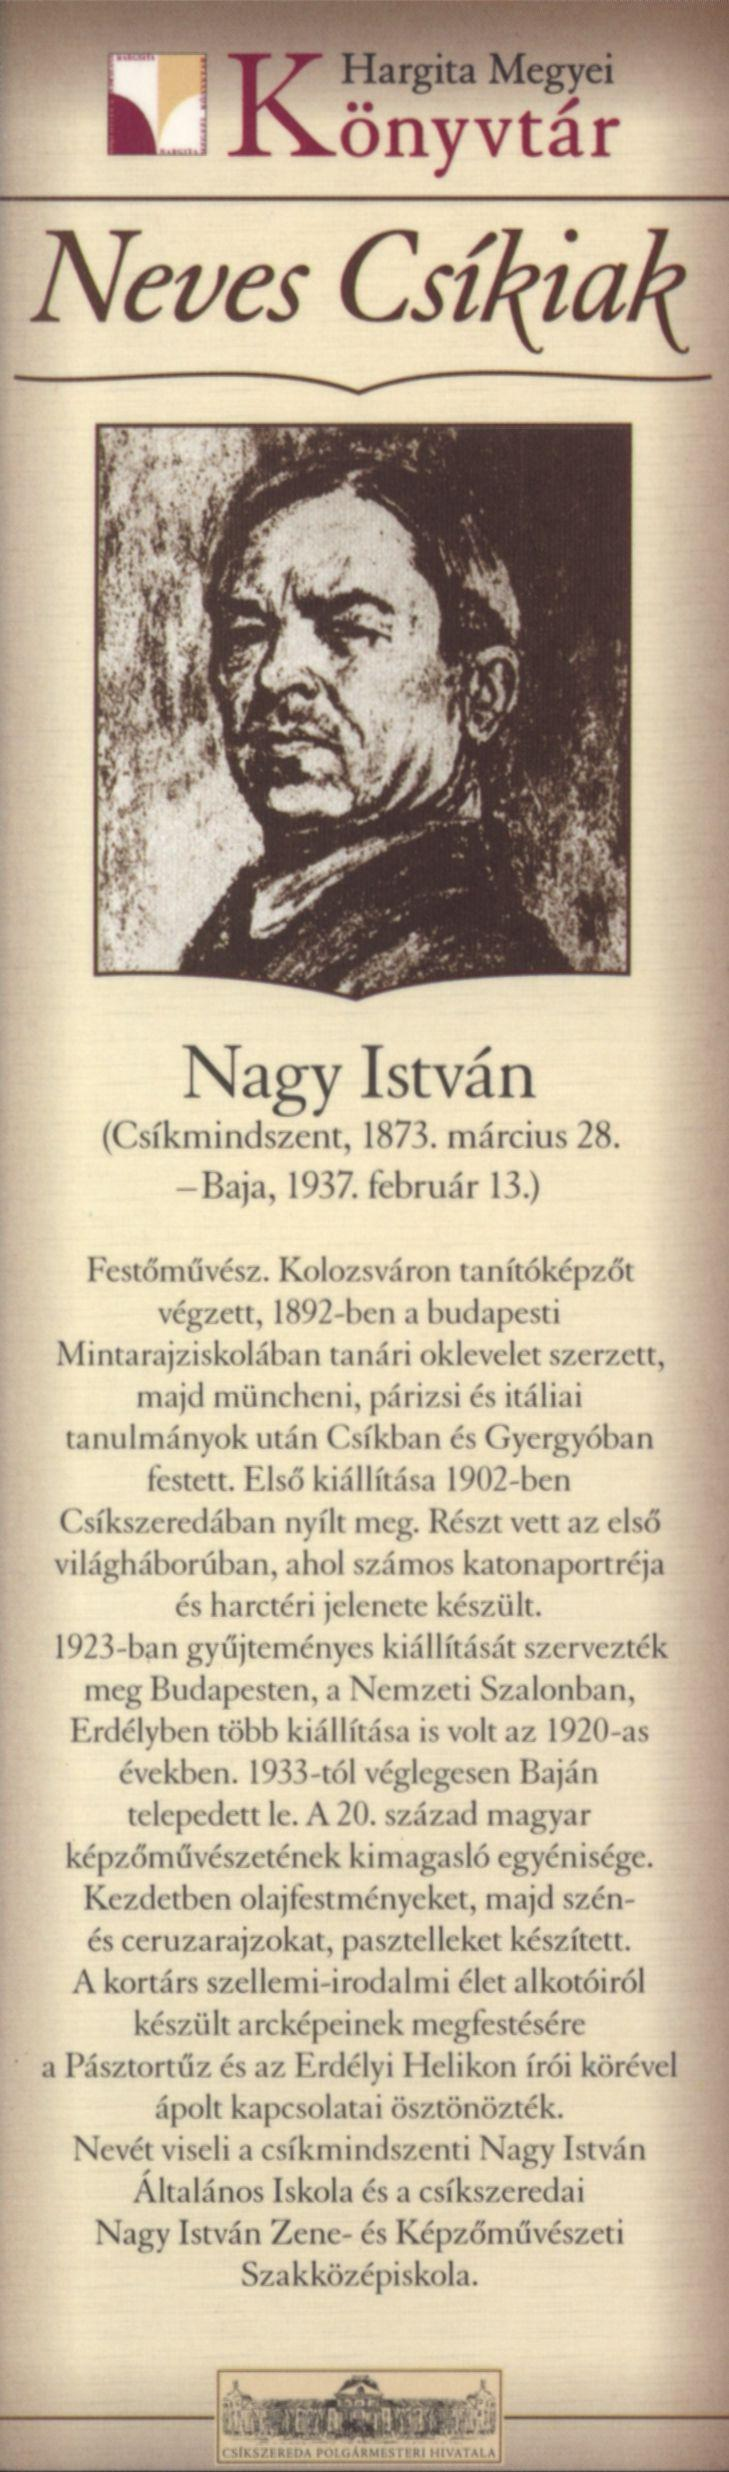 Nagy István (Csíkmindszent, 1873. március 28. -Baja, 1937. február 13.) Festőművész.